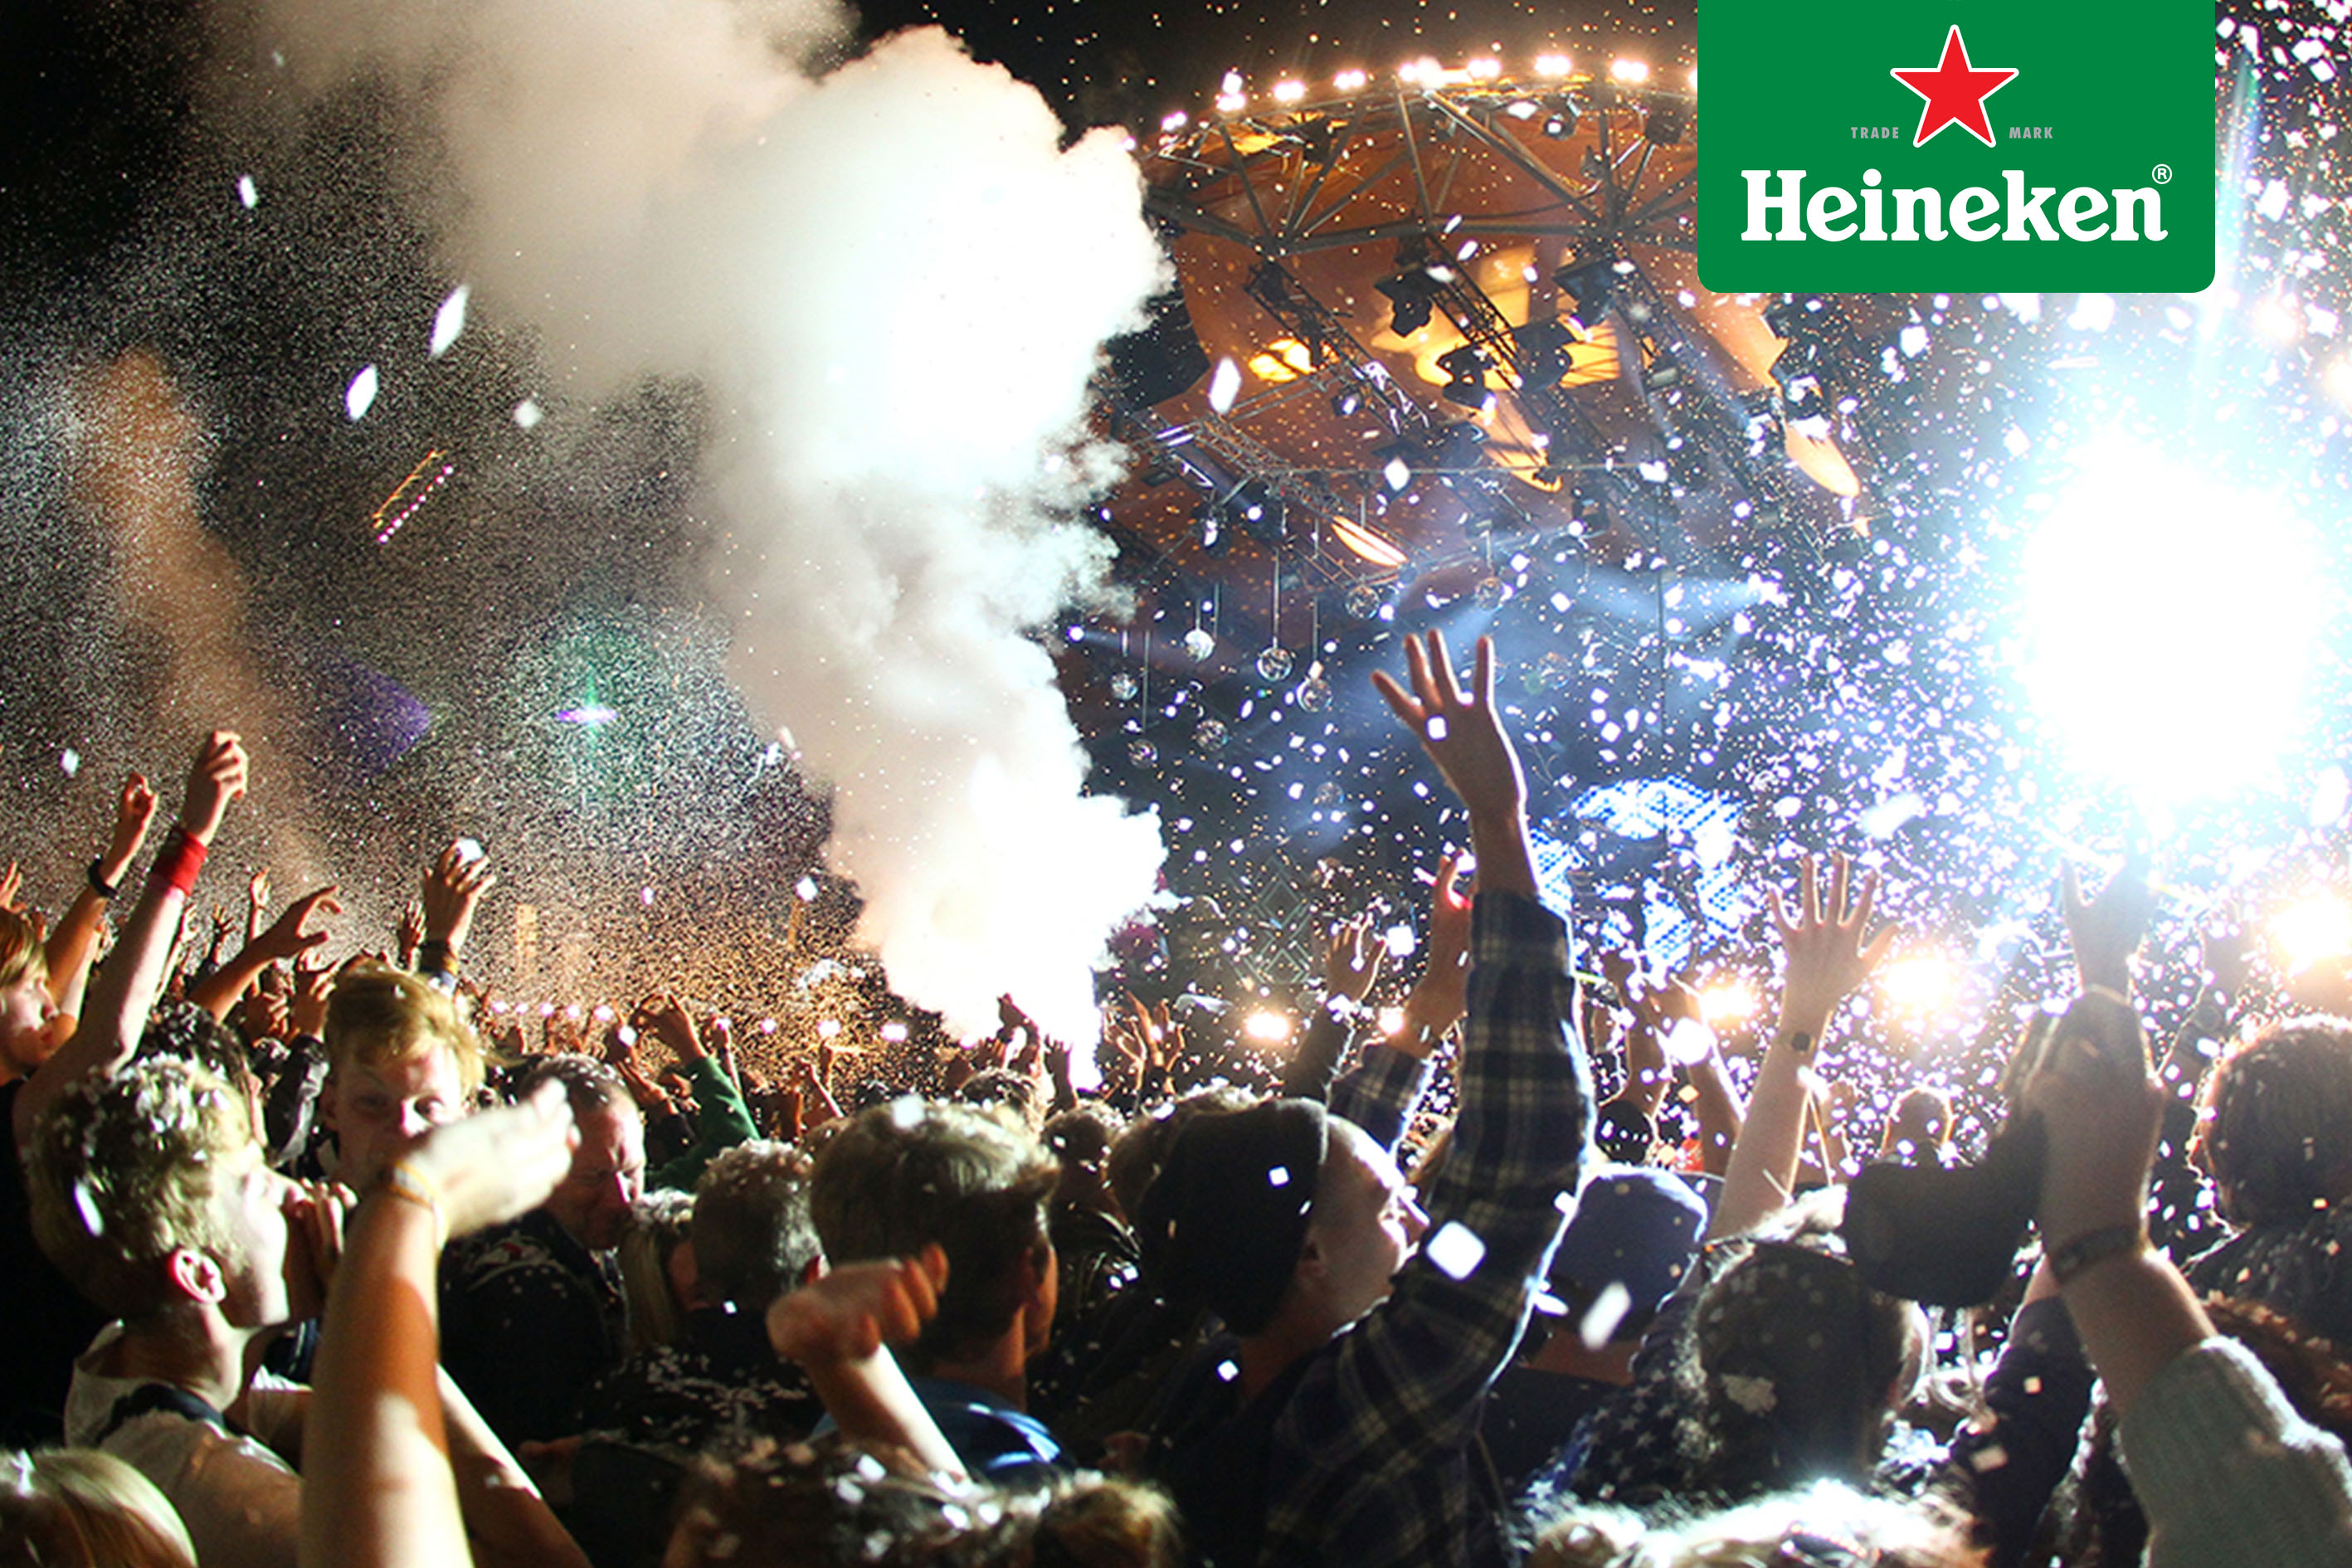 Todo lo que sucedió en Roskilde Festival 2015 gracias a #HeinekenLife